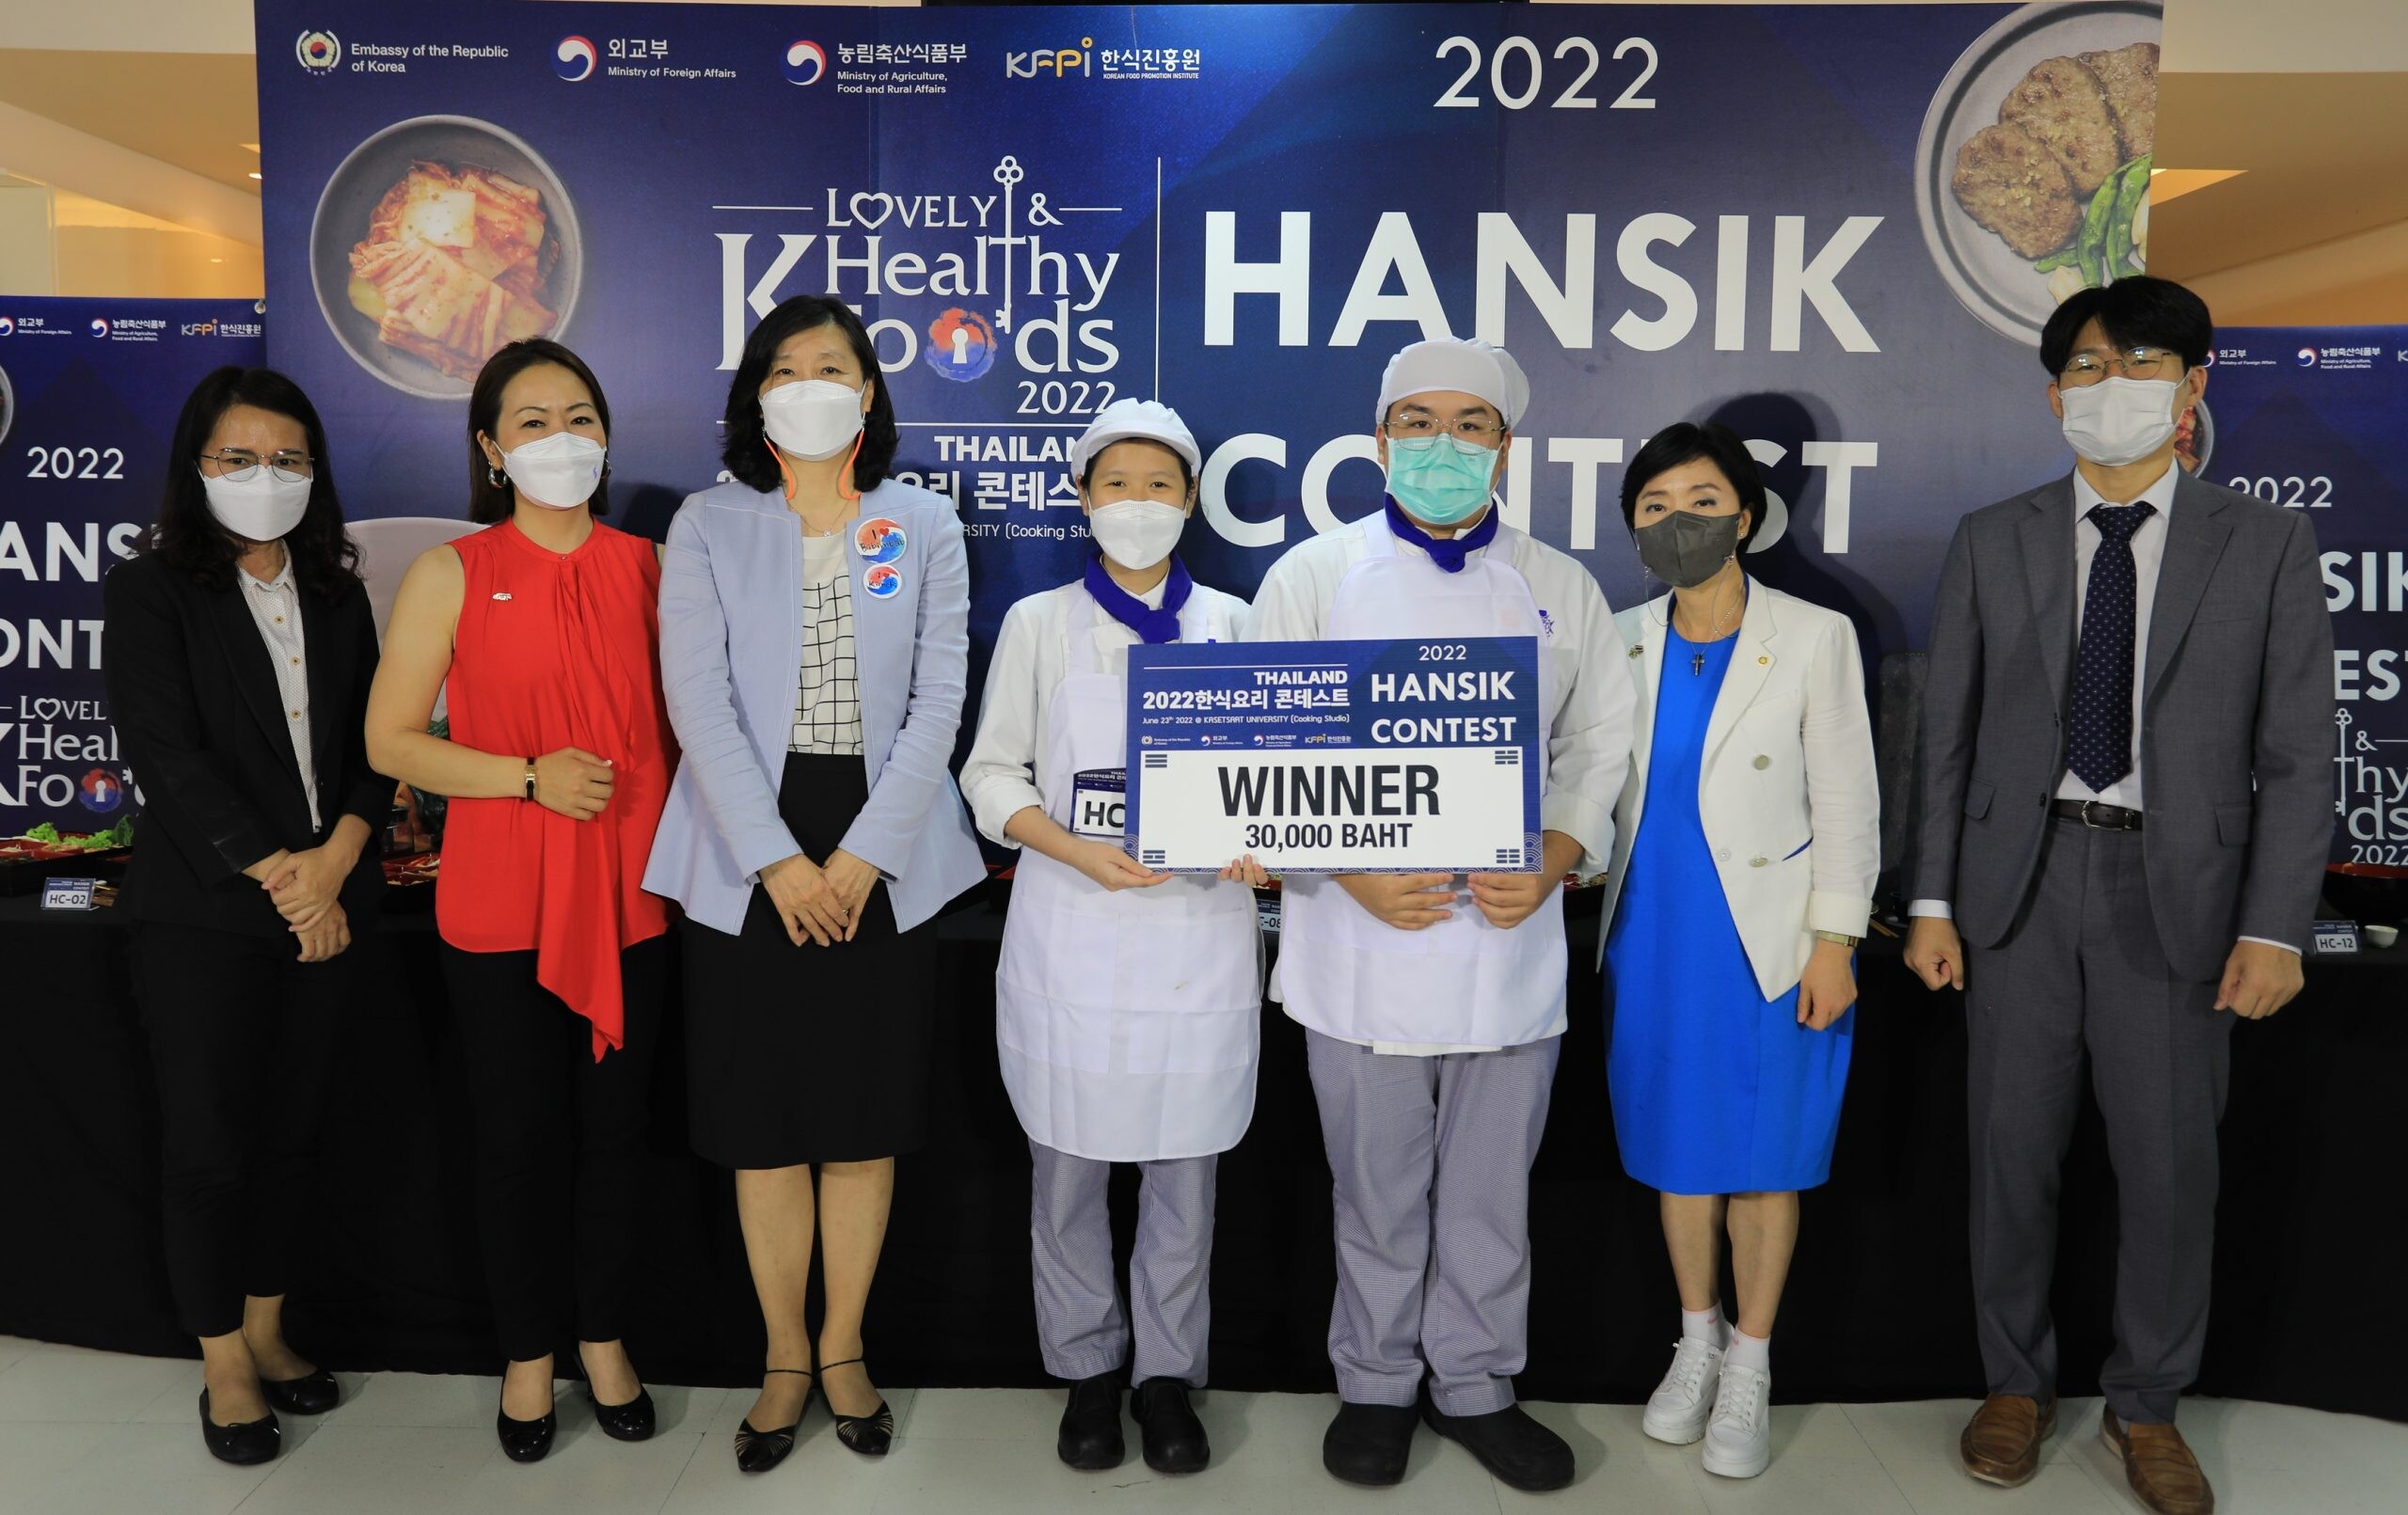 สุดยอดนักศึกษาจาก เลอ กอร์ดอง เบลอ ดุสิต คว้าแชมป์การทำแข่งขันทำอาหารเกาหลีเพื่อสุขภาพ ในหัวข้อ Lovely Healthy K-Foods 2022